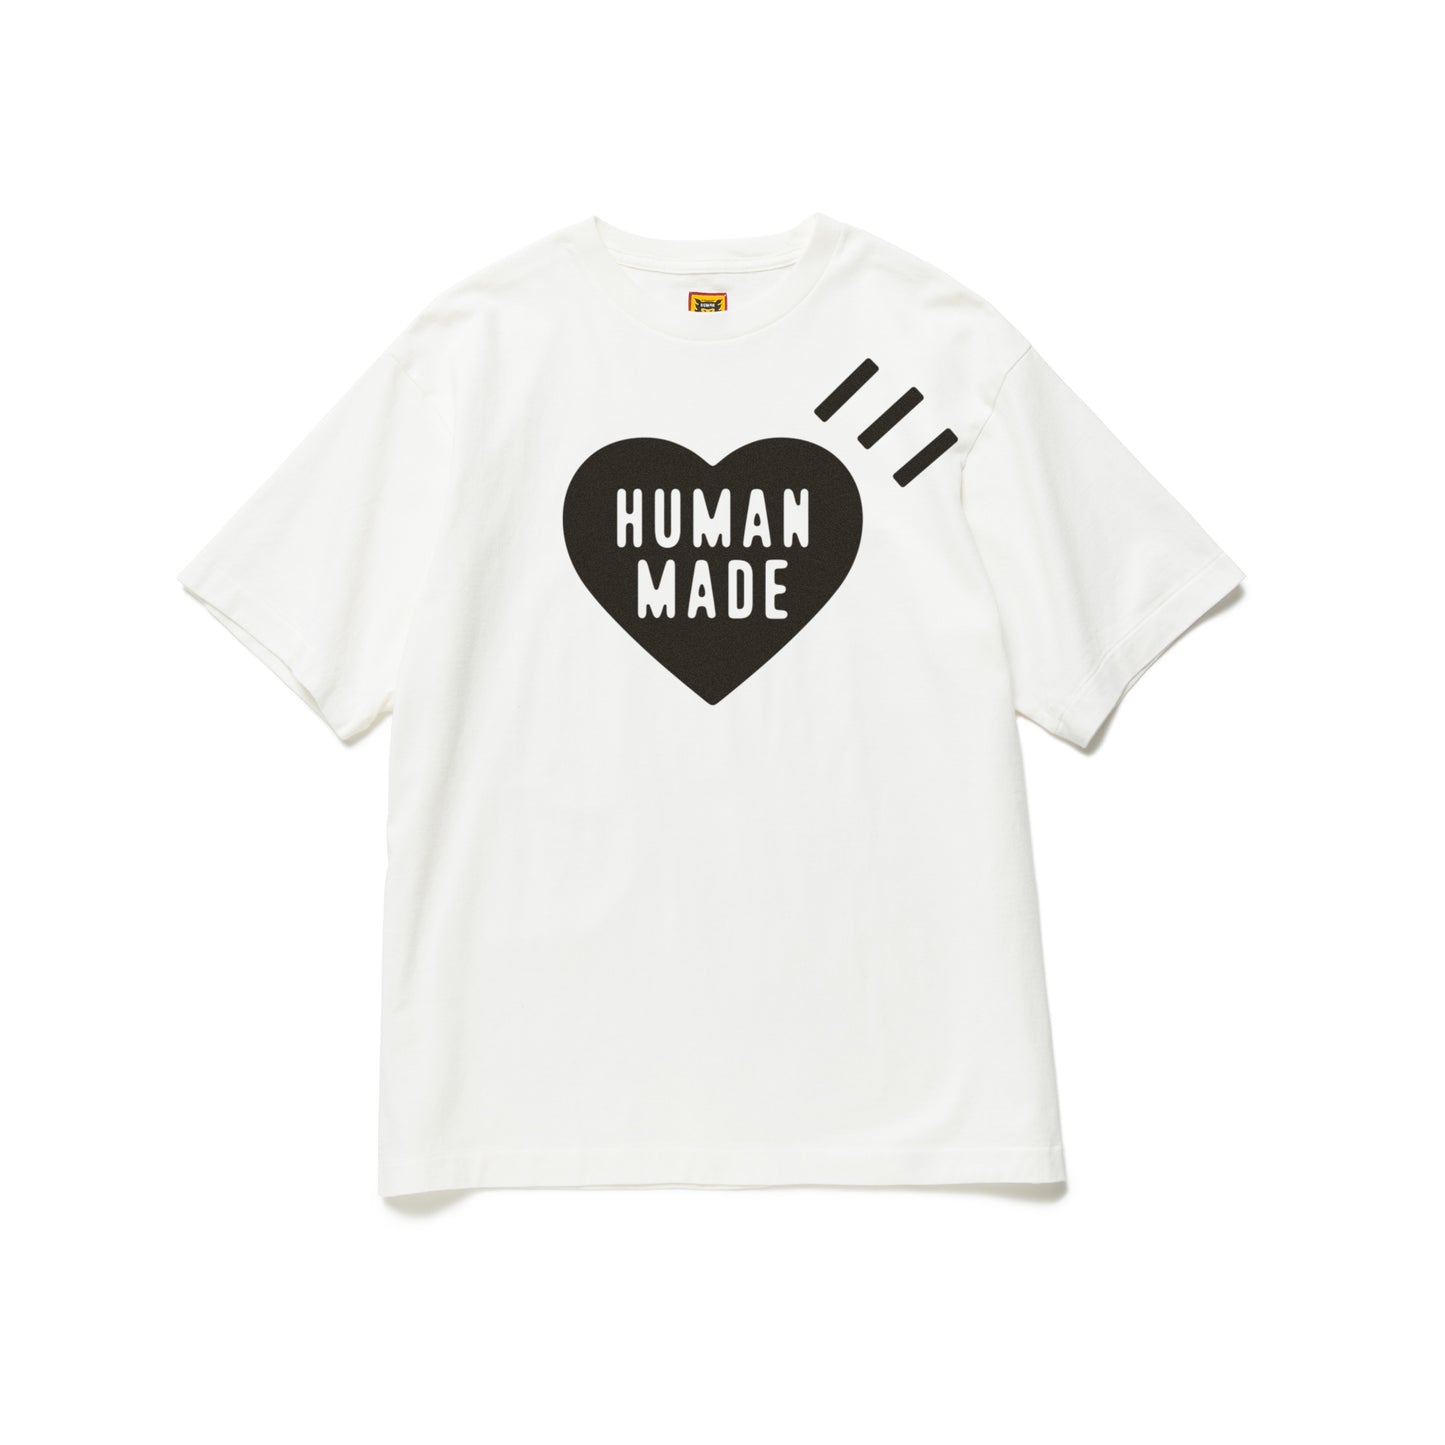 human made シャツご検討よろしくお願いします